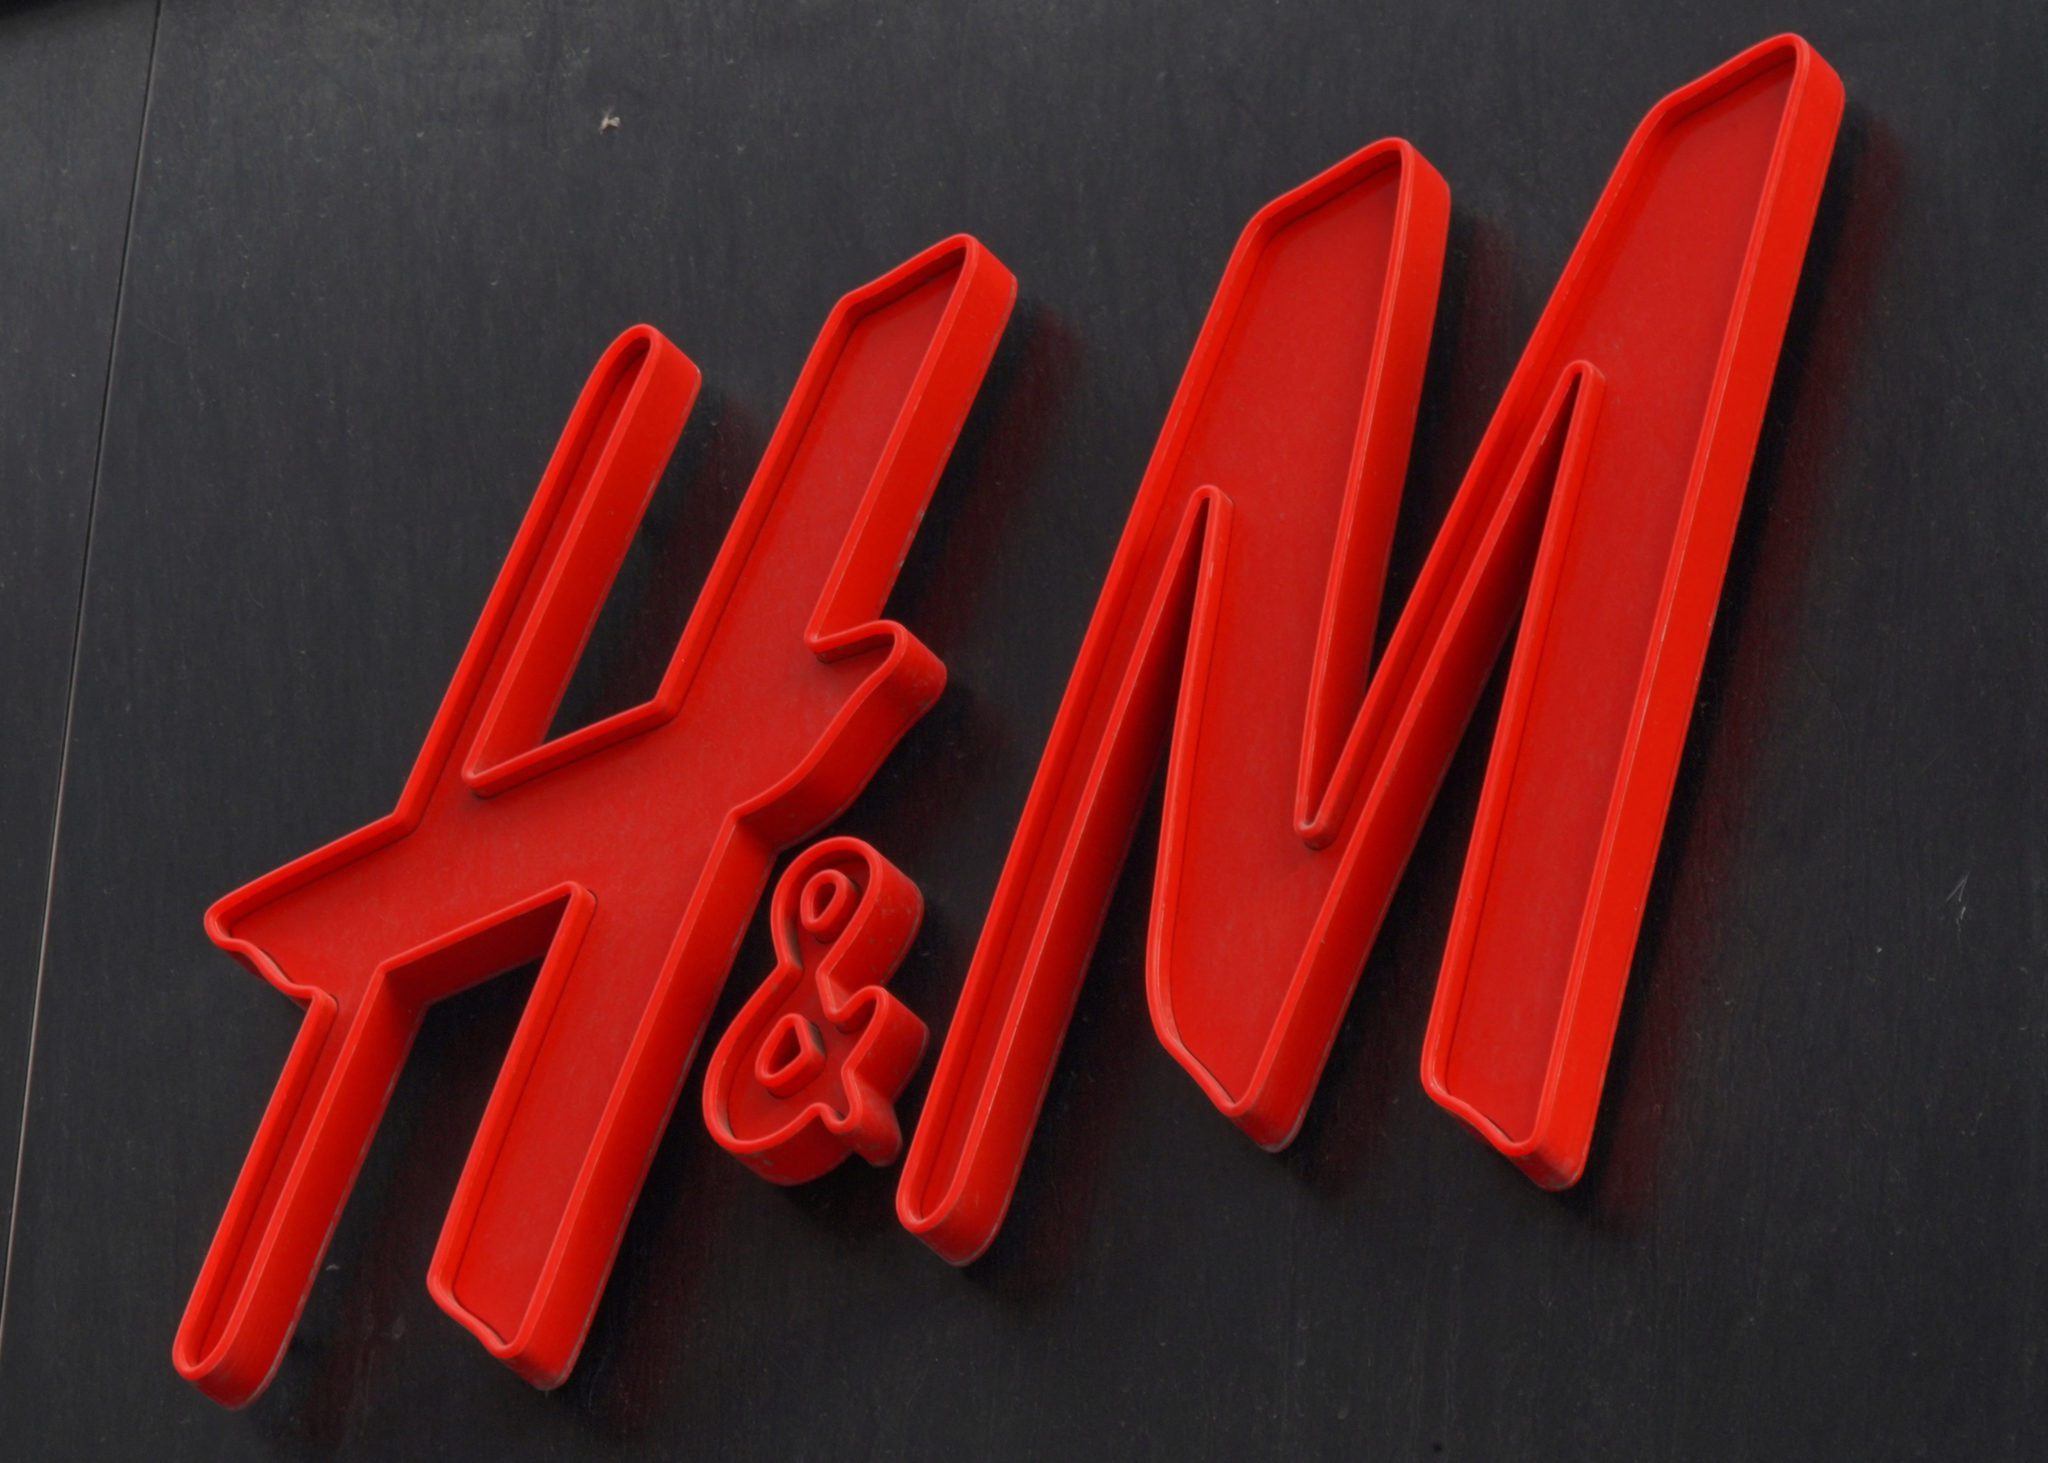 BTG traça desafios, mas não descarta que H&M vire força crescente